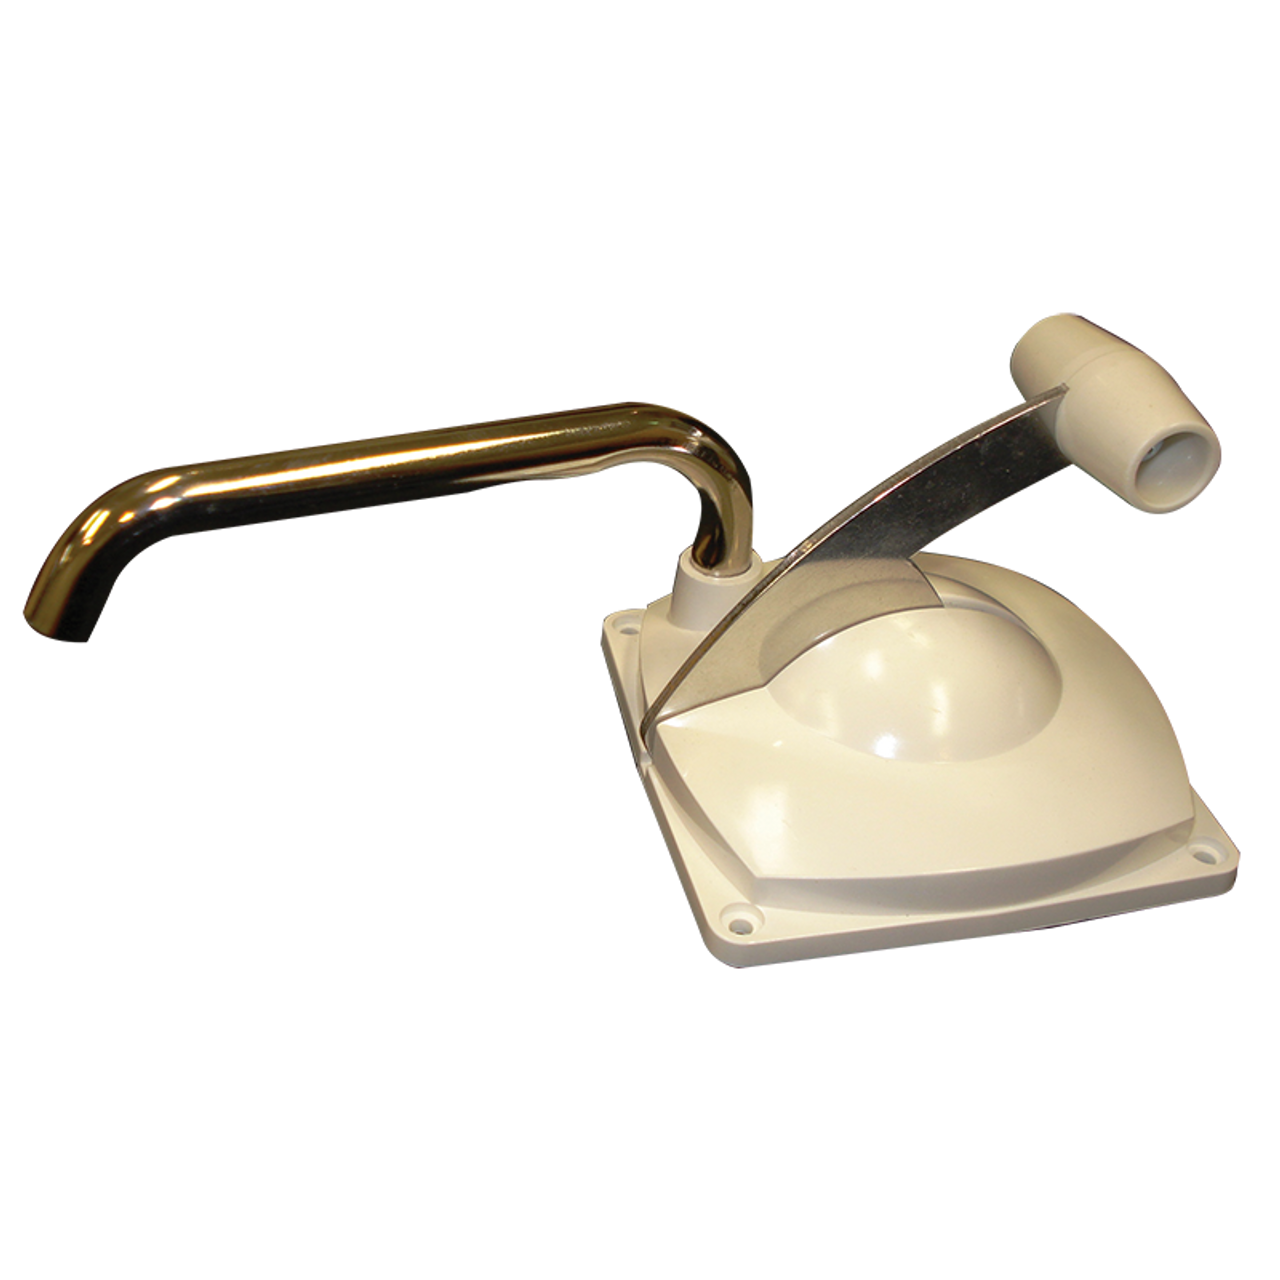 Lowboy Manual Hand Pump White W/Chrome Spout. 0084194 | 800-06440